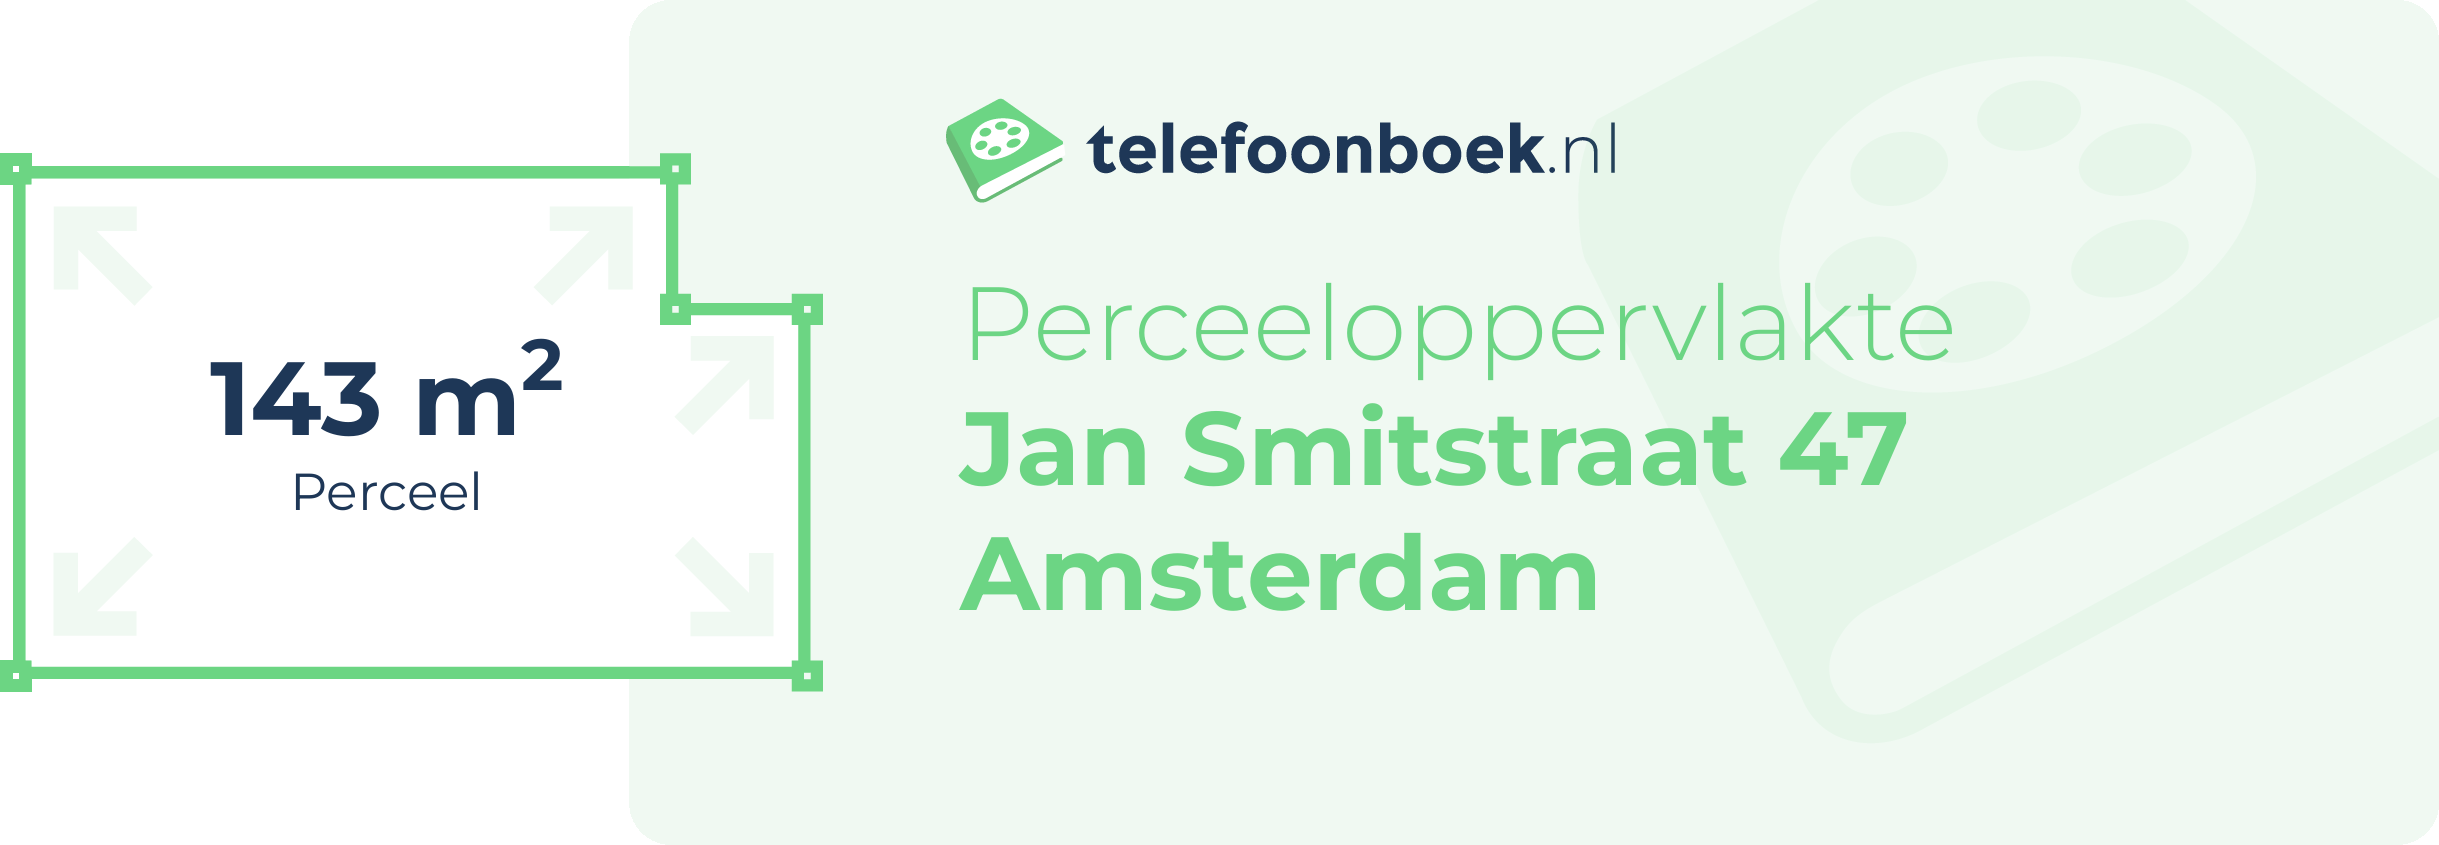 Perceeloppervlakte Jan Smitstraat 47 Amsterdam